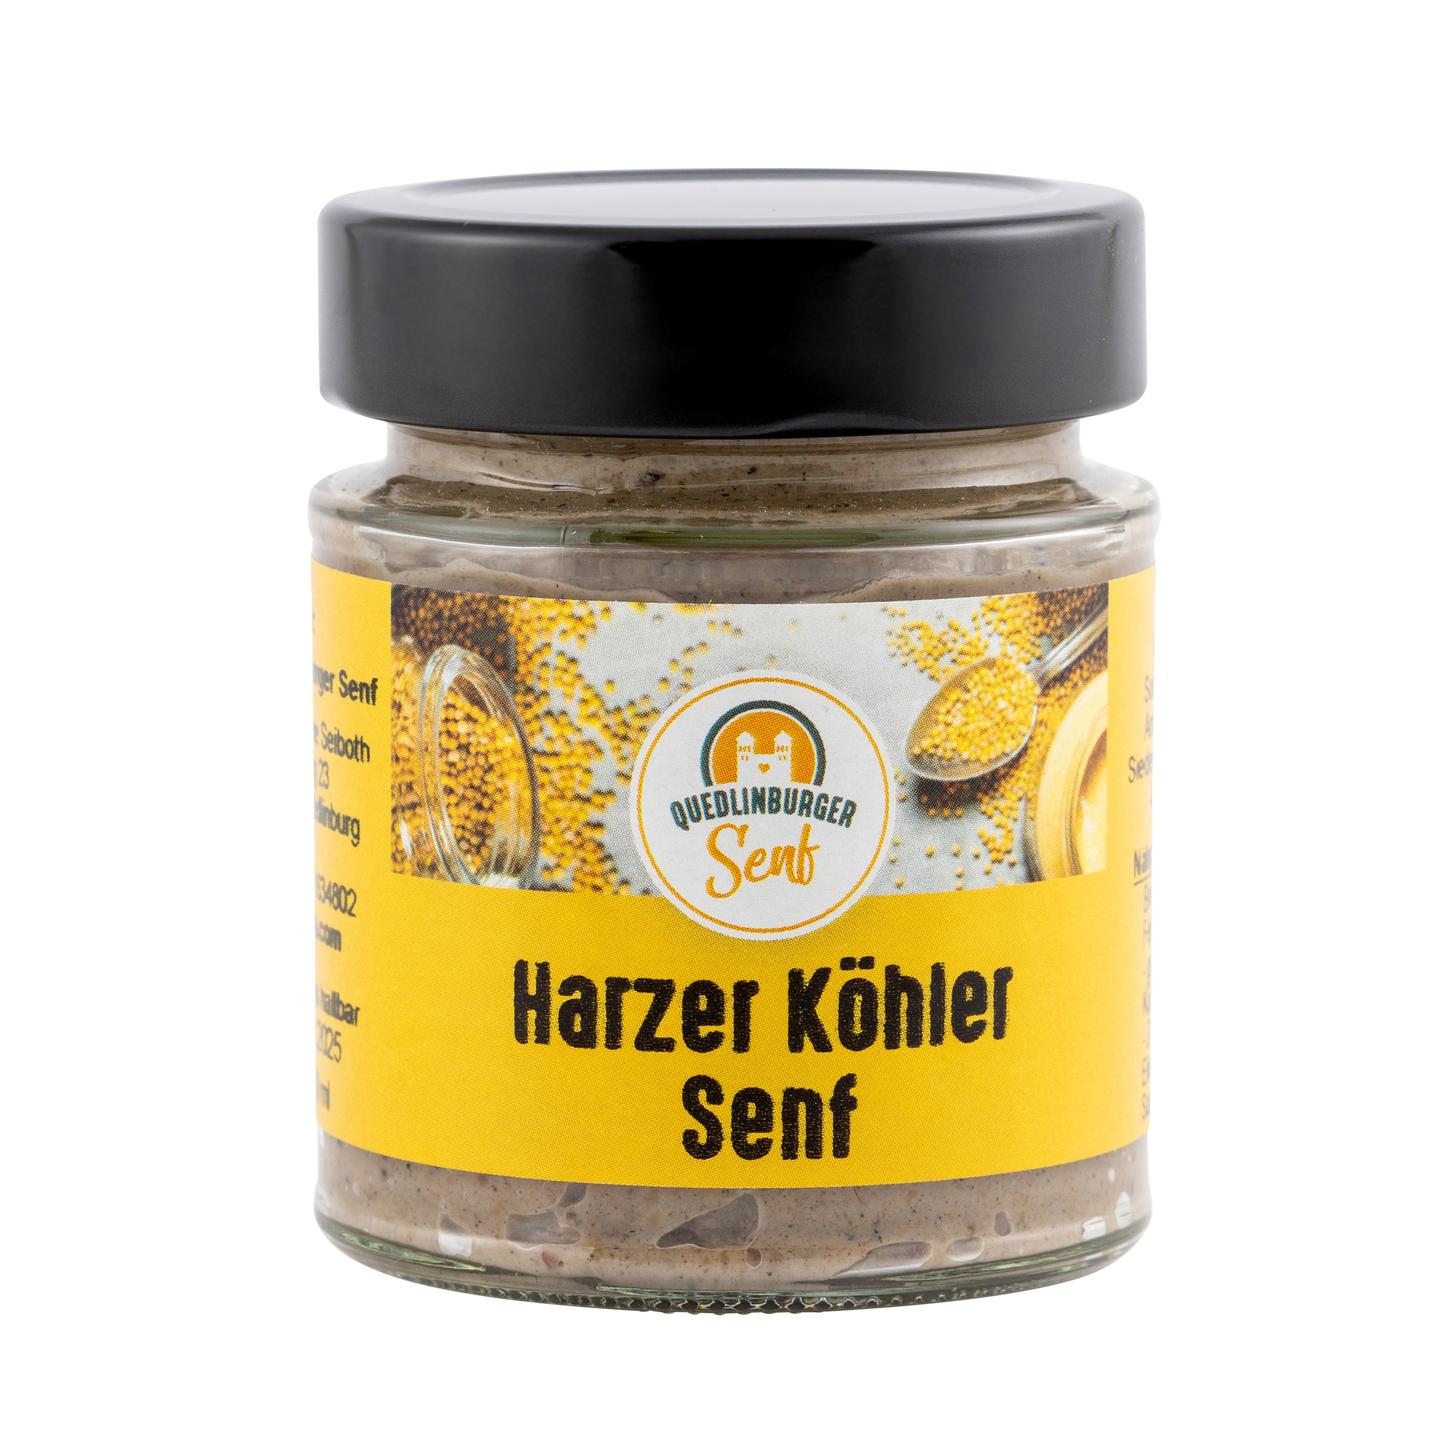 Harzer Köhler Senf